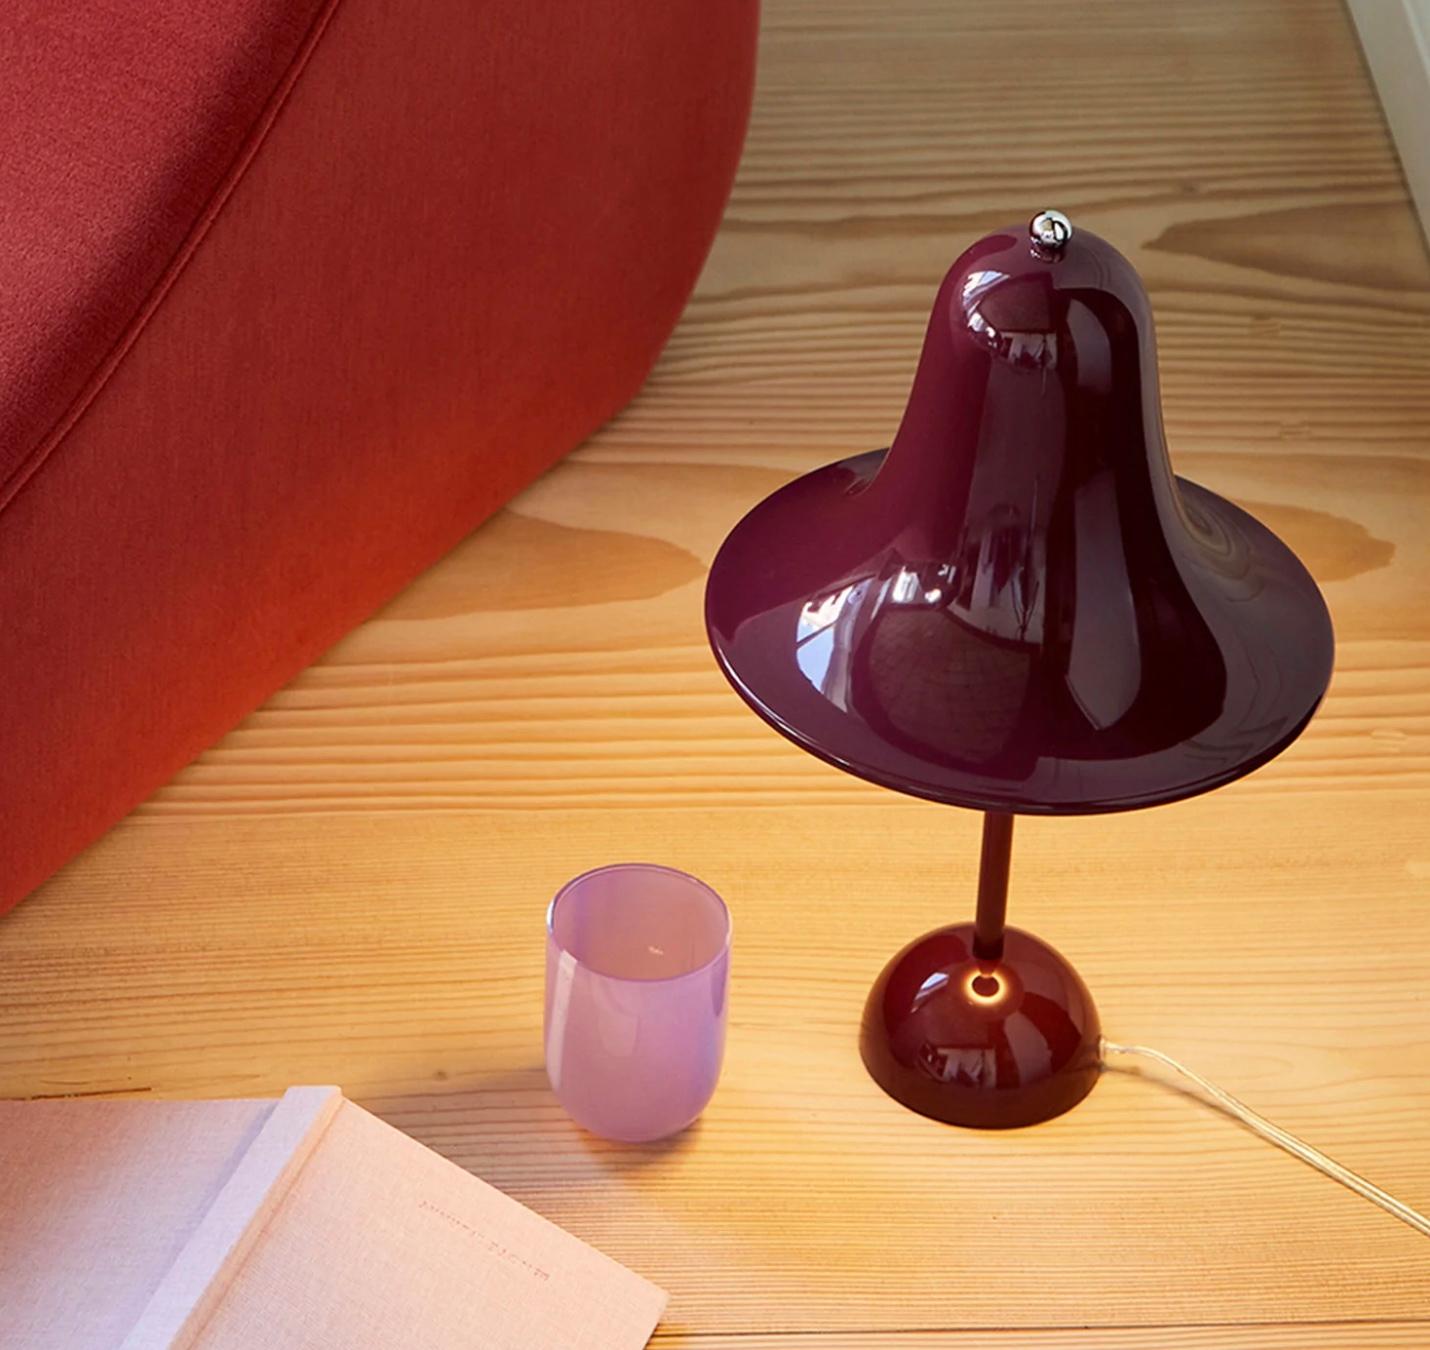 Danish Verner Panton 'Pantop' Table Lamp in 'Terracotta' 1980 for Verpan For Sale